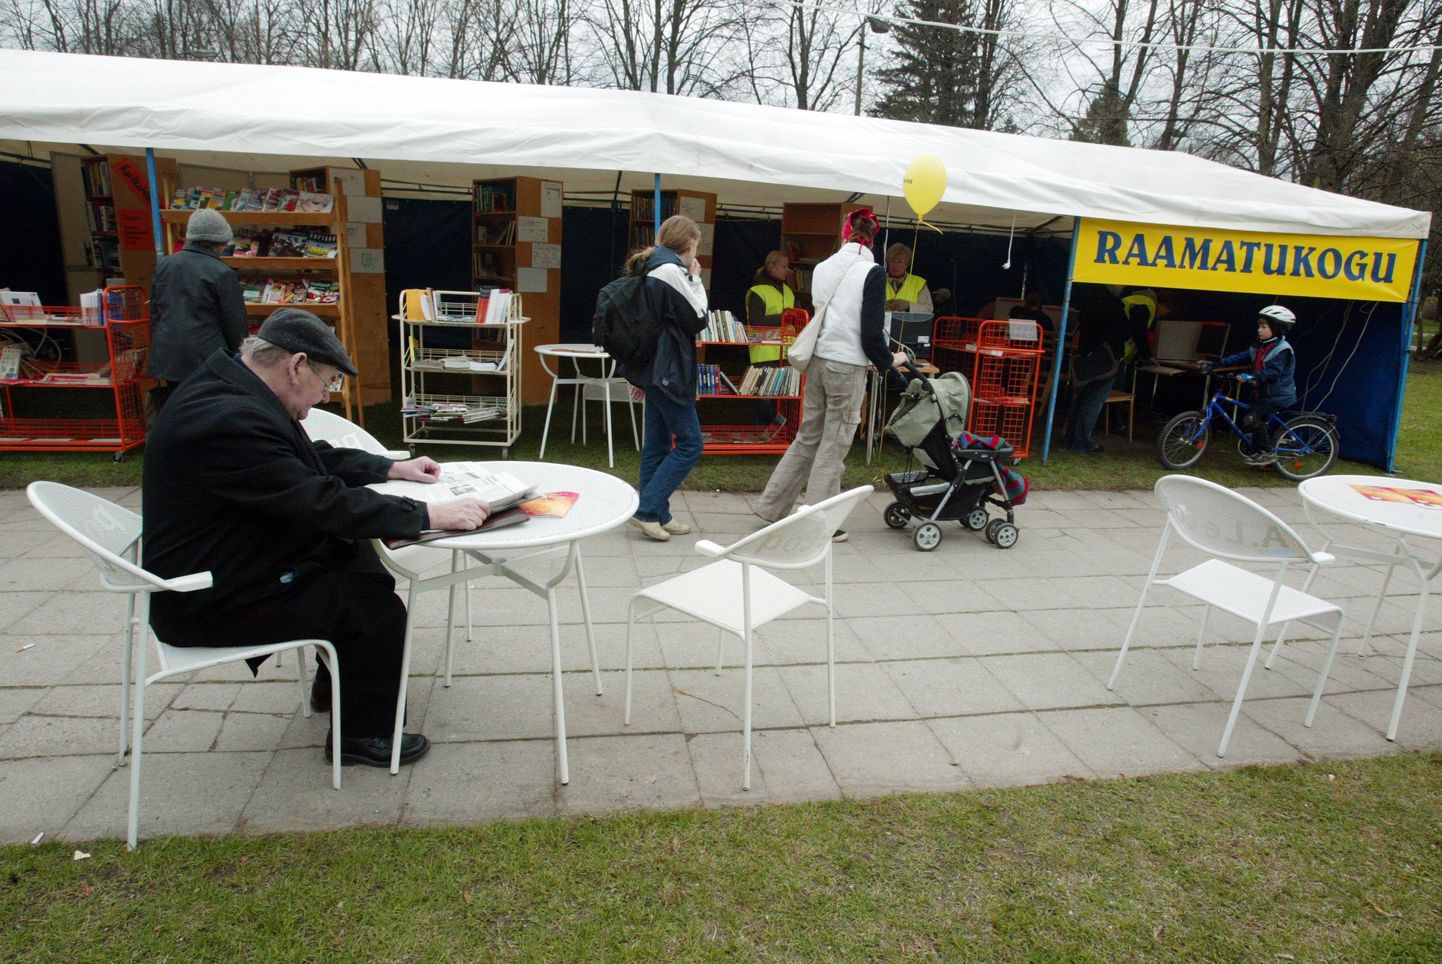 Viimastel aastatel käib kirjandusfestivaliga Prima Vista kaasas ka pargiraamatukogu Tartu kesklinnas, kus saab nii ajalehti lugeda kui ka raamatuid laenutada.